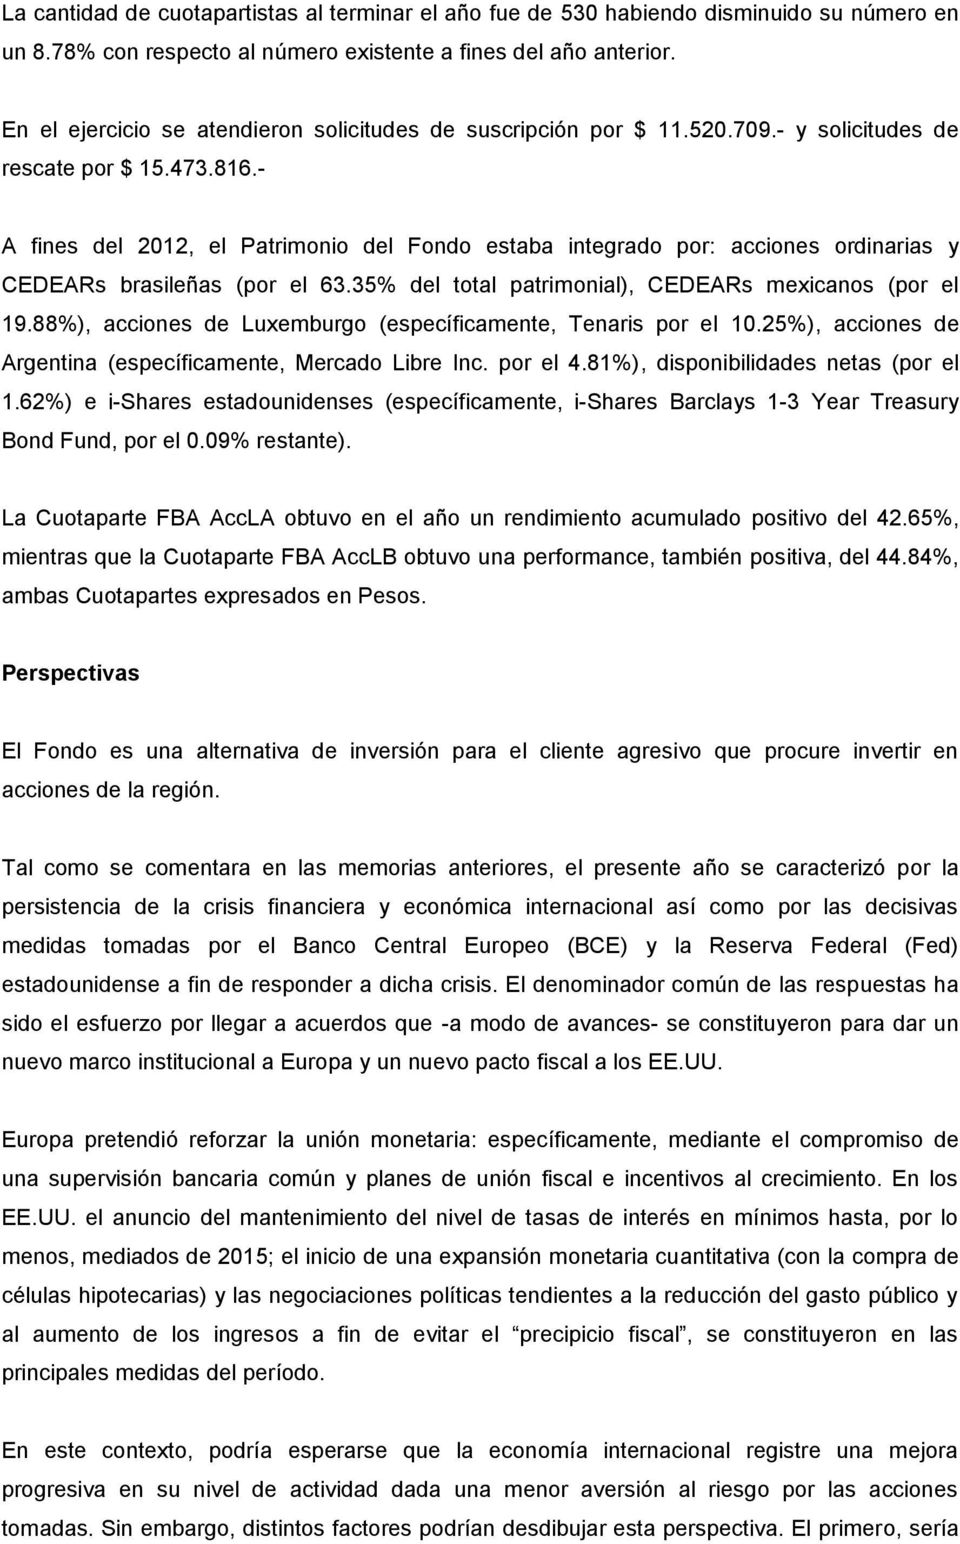 - A fines del 2012, el Patrimonio del Fondo estaba integrado por: acciones ordinarias y CEDEARs brasileñas (por el 63.35% del total patrimonial), CEDEARs mexicanos (por el 19.